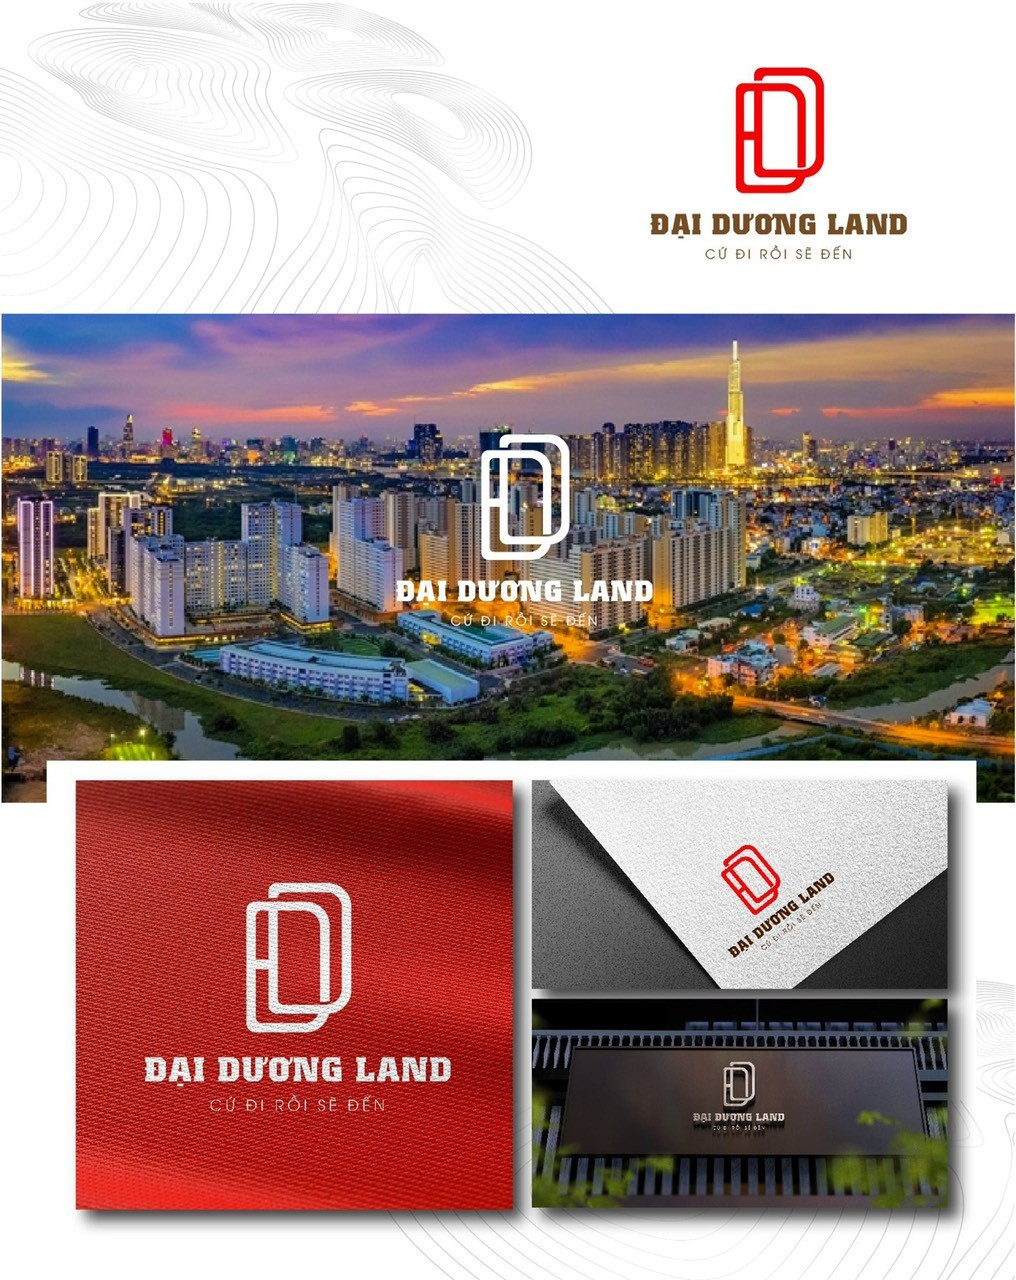 Đại Dương Land là đơn vị phân phối bất động sản chuyên nghiệp và uy tín, có nhiều dấu ấn trên thị trường bất động sản Việt Nam